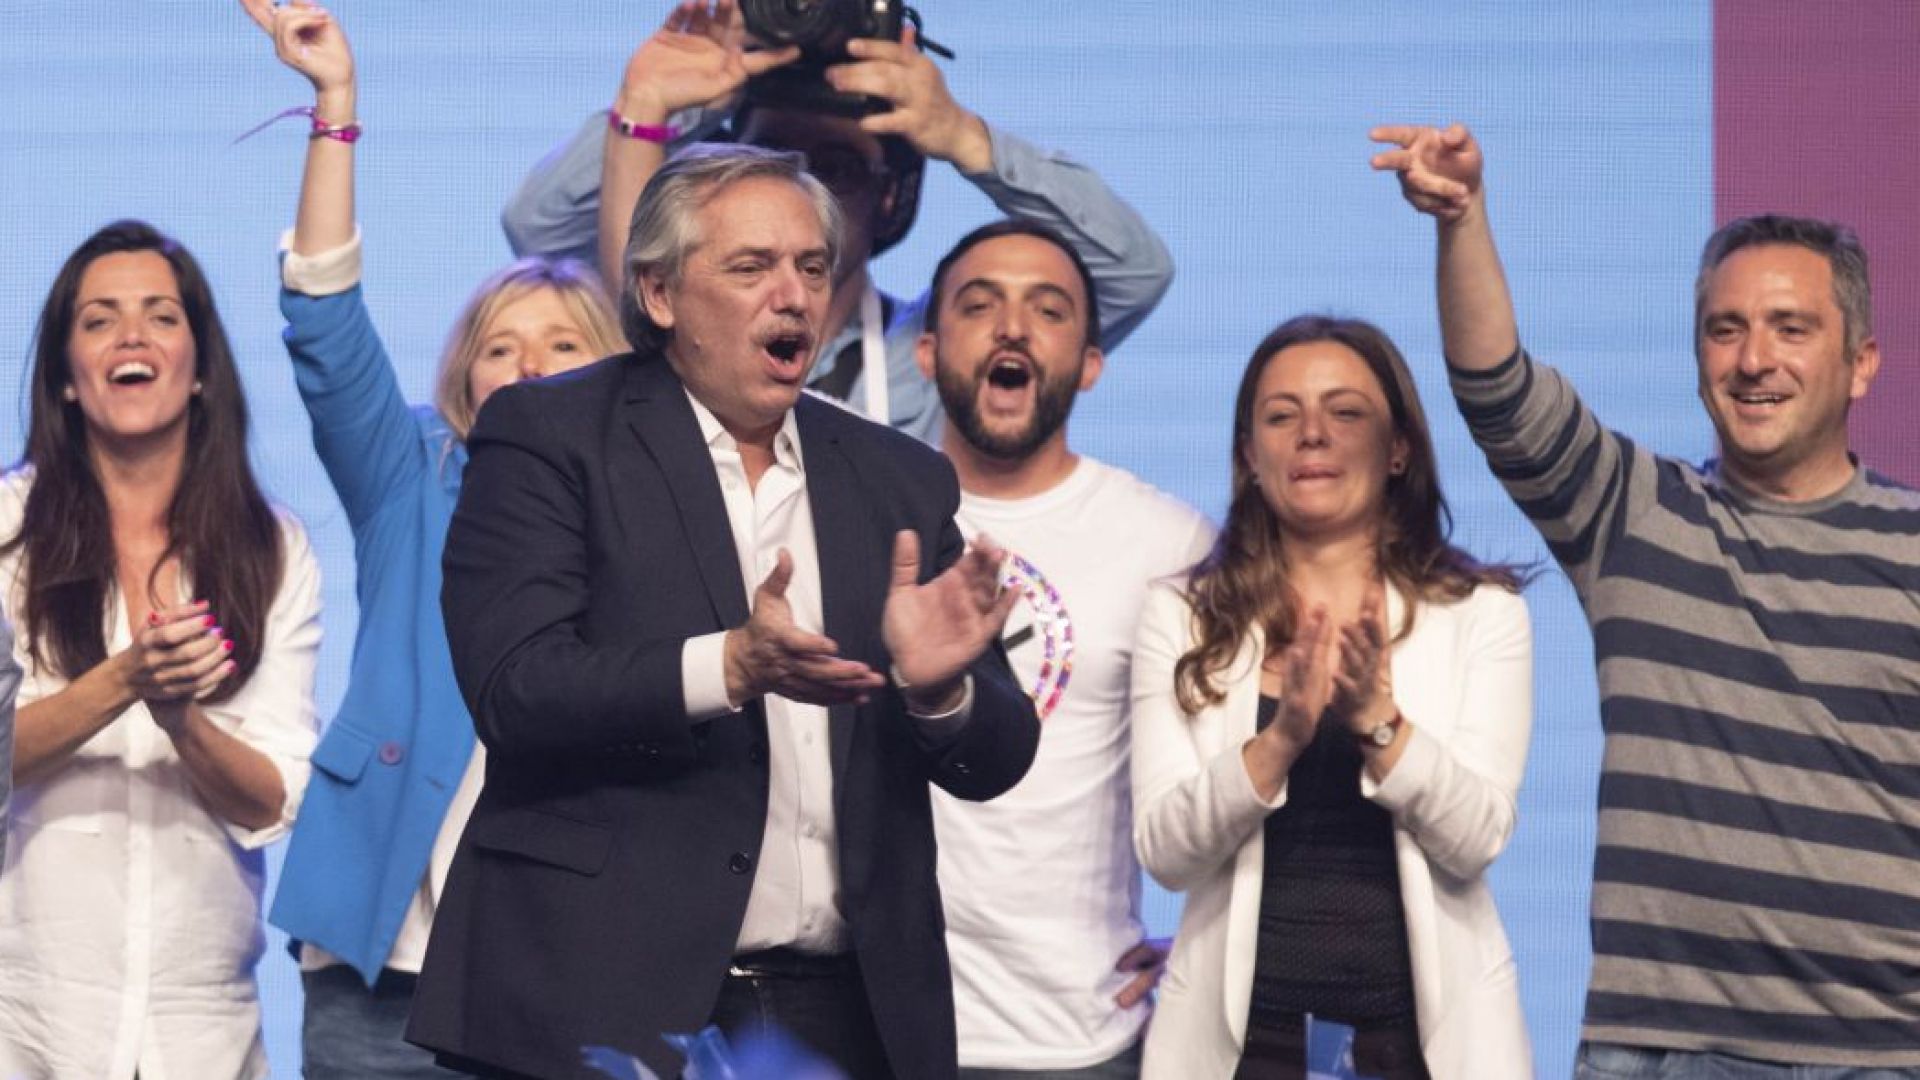 Алберто Фернандес който спечели вчерашните президентски избори в Аржентина е